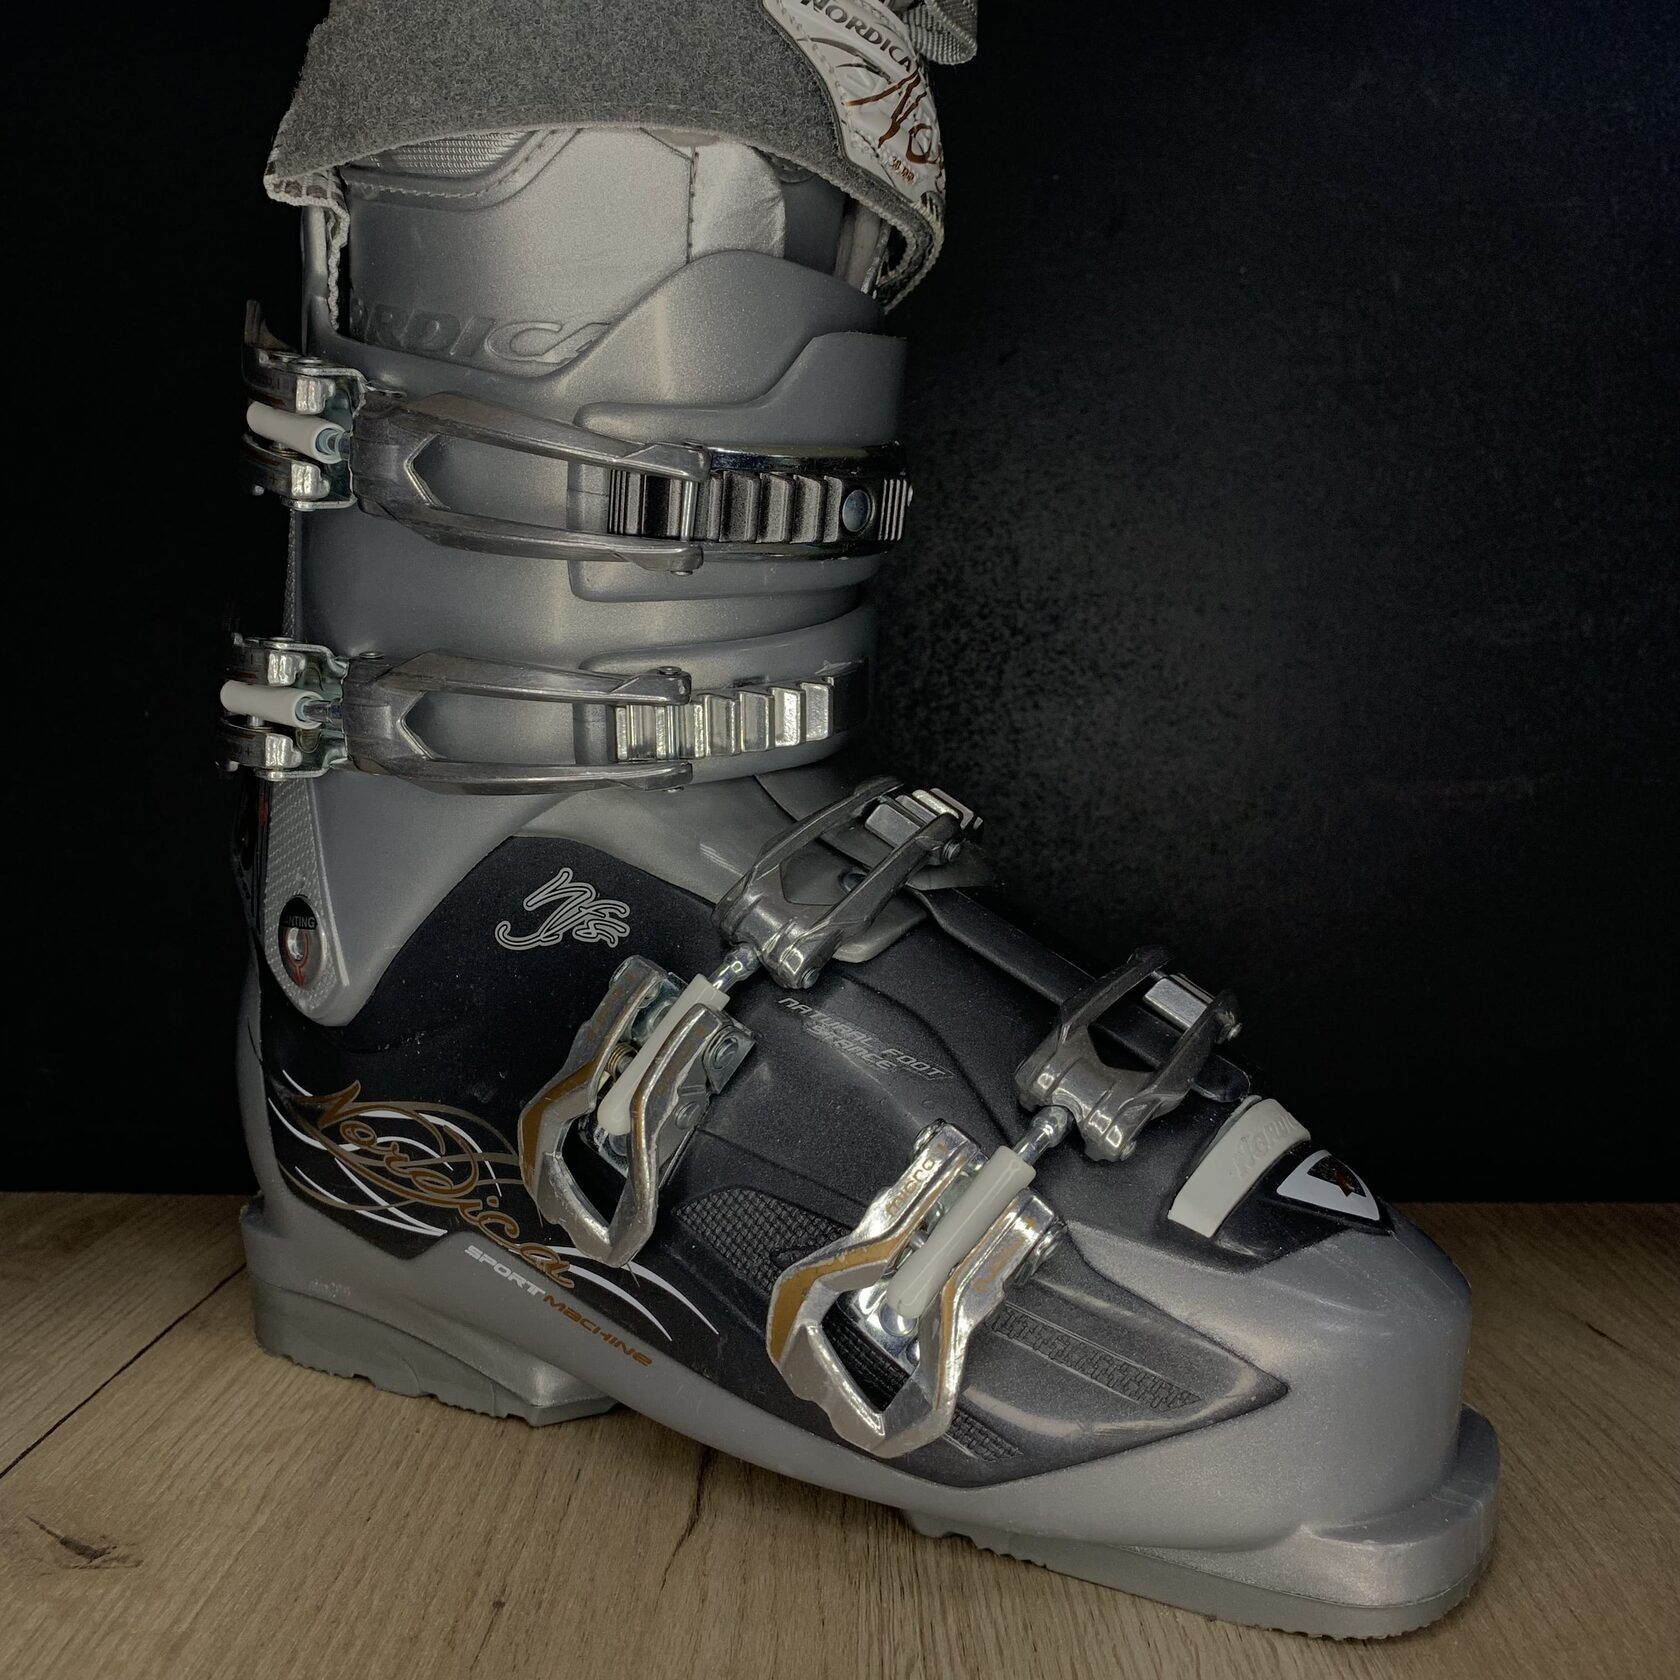 Ботинки NORDICA Flex 75 - прокат горных лыж в Омске